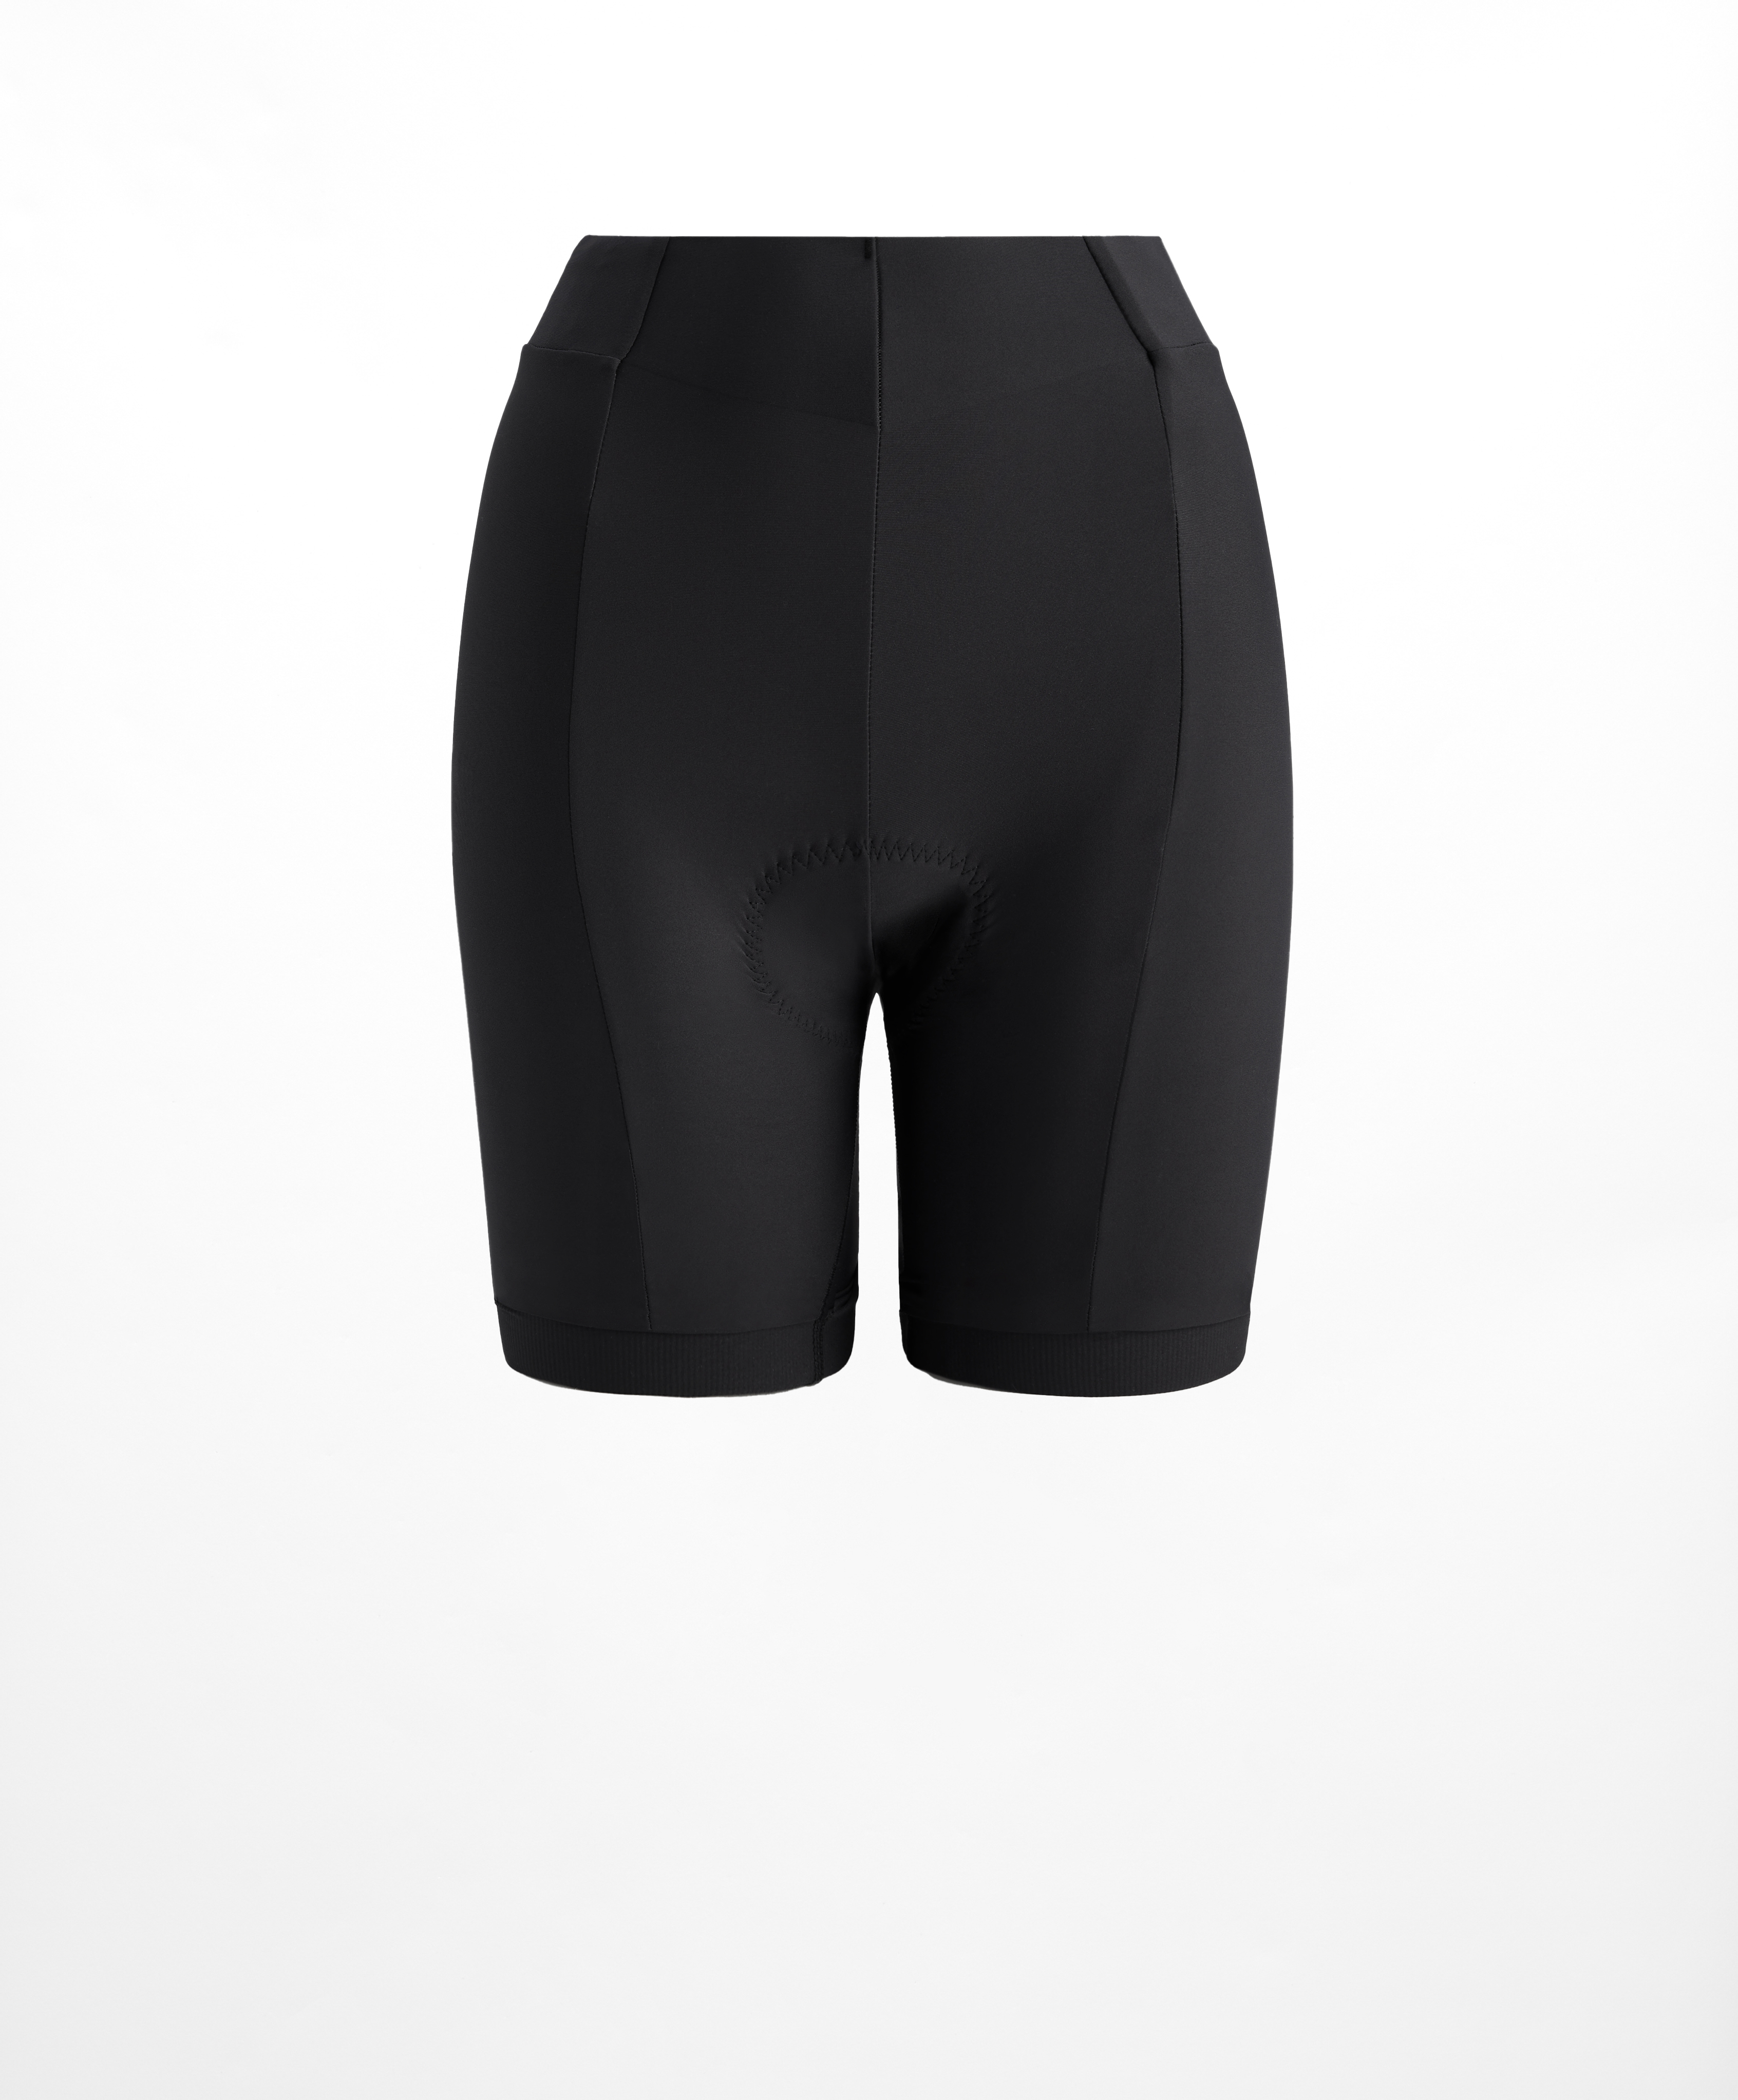 20cm cycling shorts